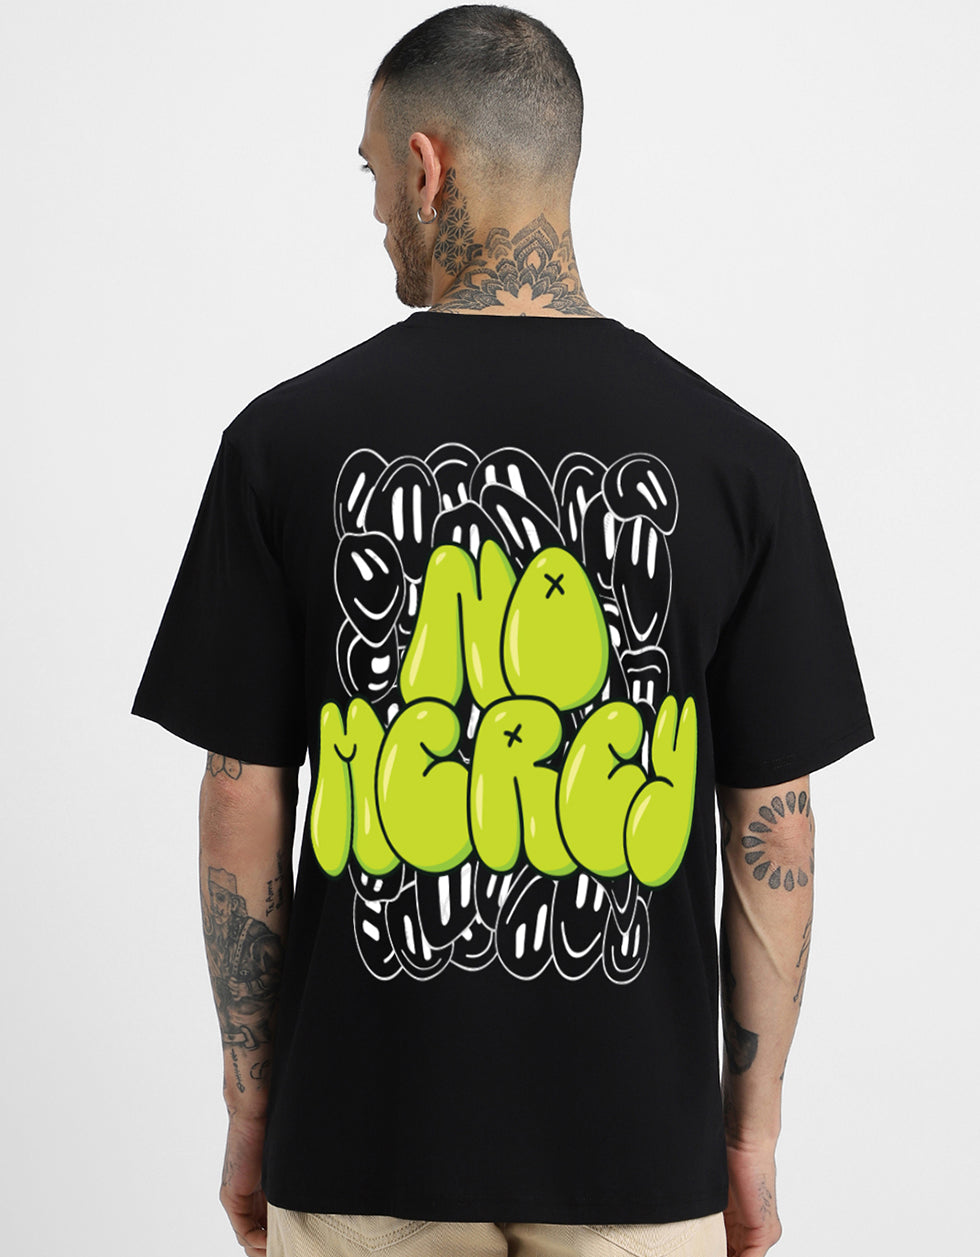 NO MERCY Black Back Typographic Printed Tshirt